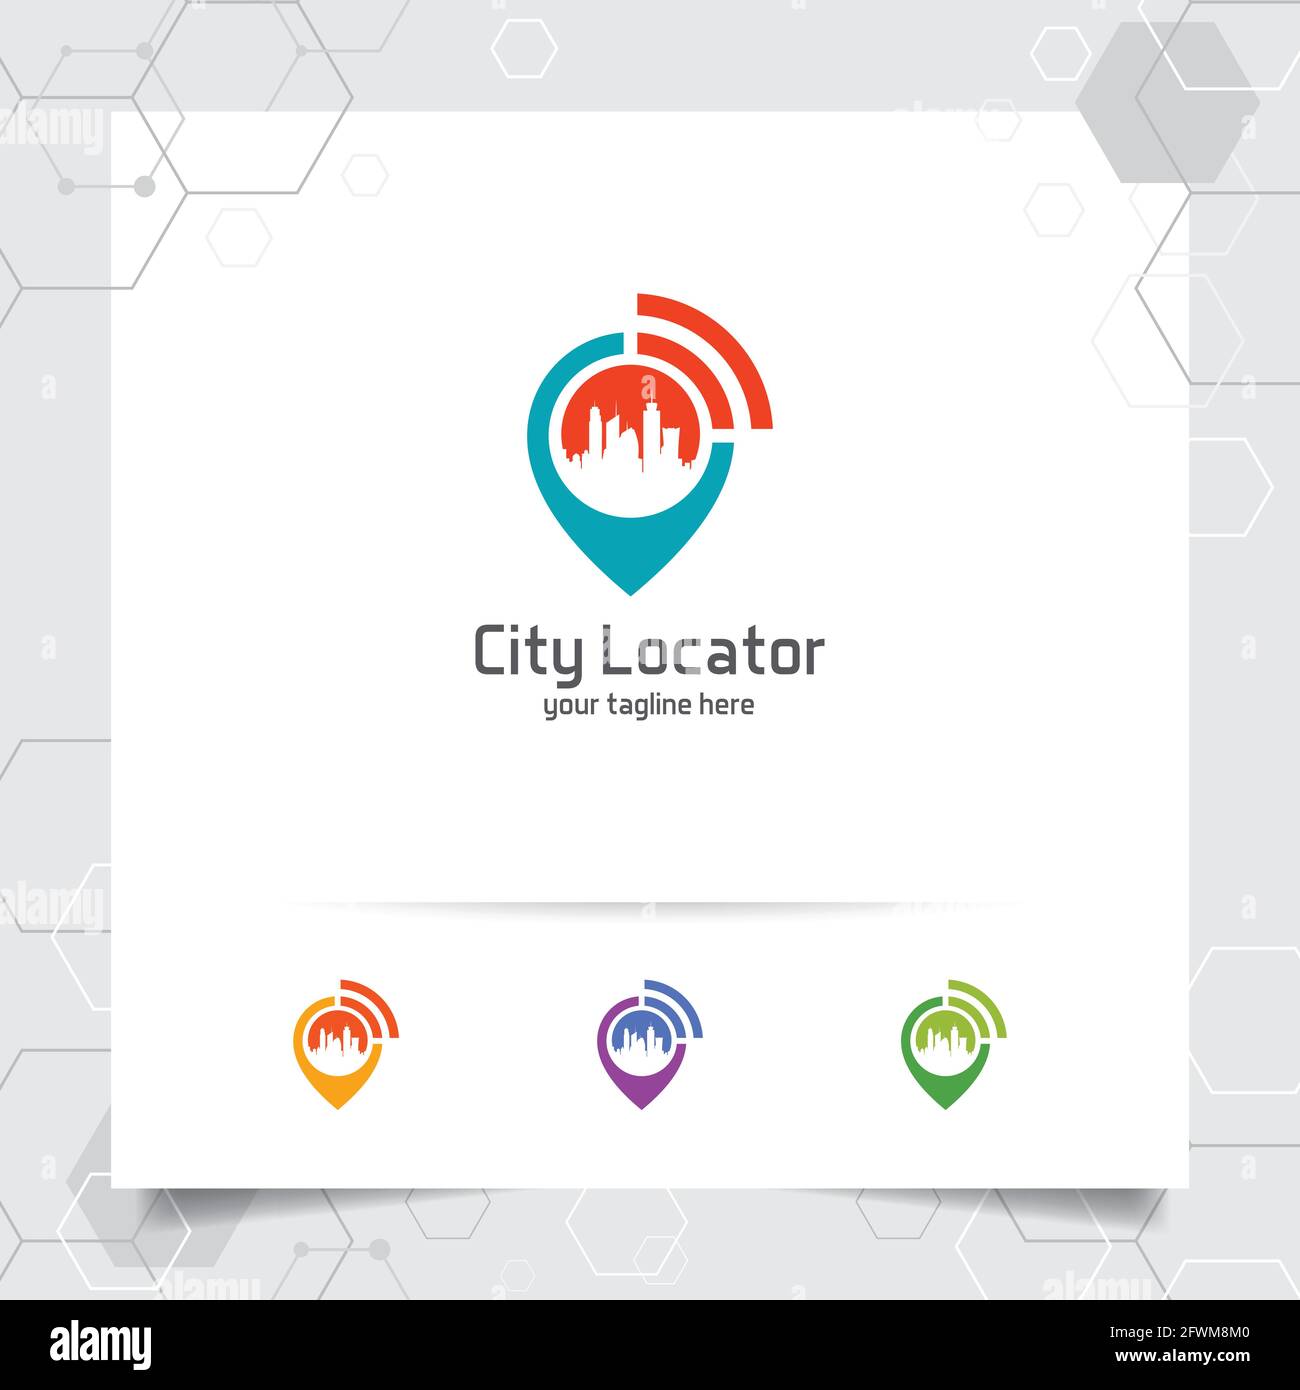 City Locate Logo Vektor mit Konzept von Pin-Karte Locator und WiFi Stadtbild Symbol Design für Reisen, lokalen Guide, gps, und Tour. Stock Vektor